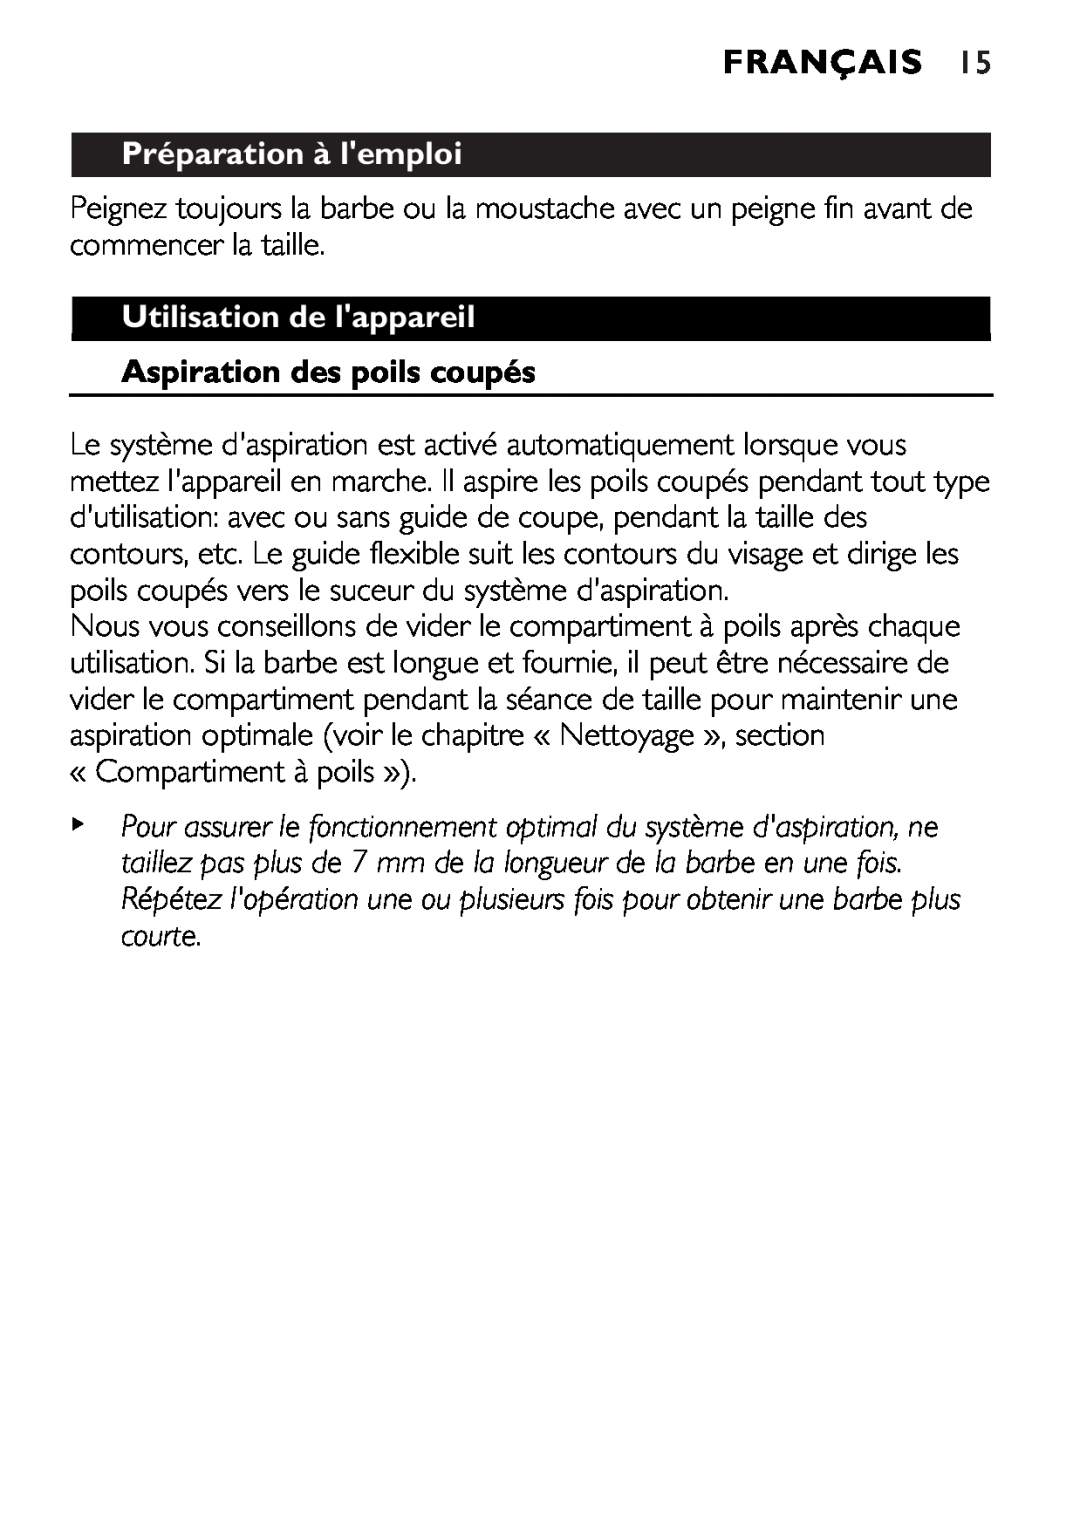 Philips 646-039 manual Français, Préparation à lemploi, Utilisation de lappareil, Aspiration des poils coupés 